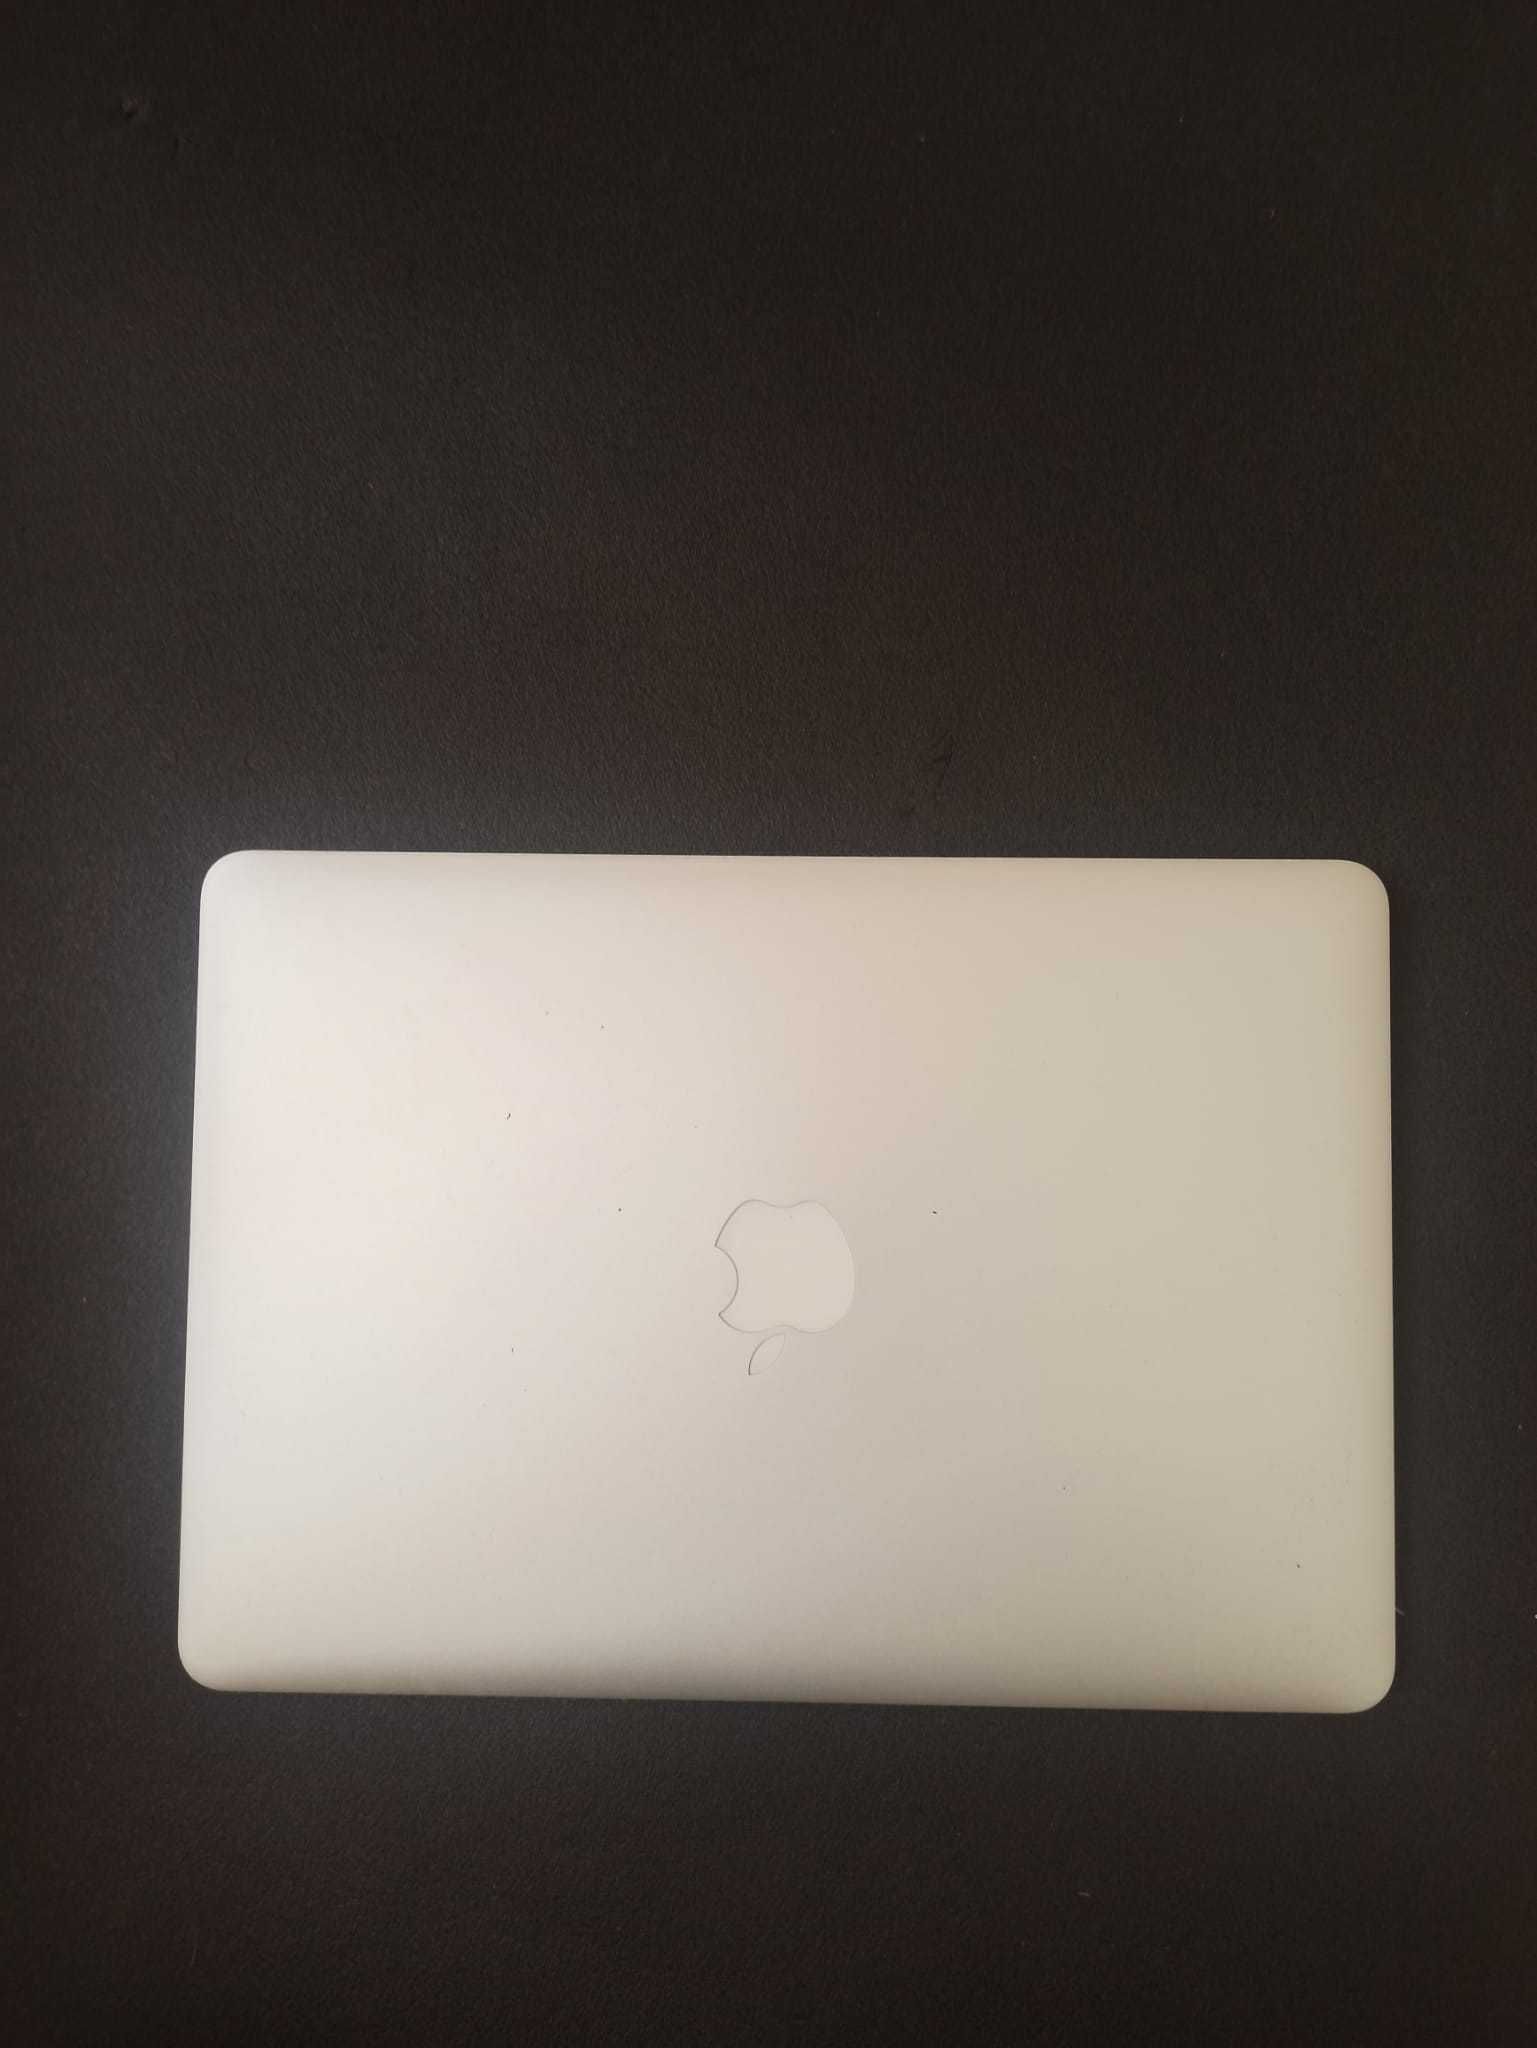 Apple Macbook Air'17  [8GB - 13INCH - 1.8 GHZ - i5 - 128GB]